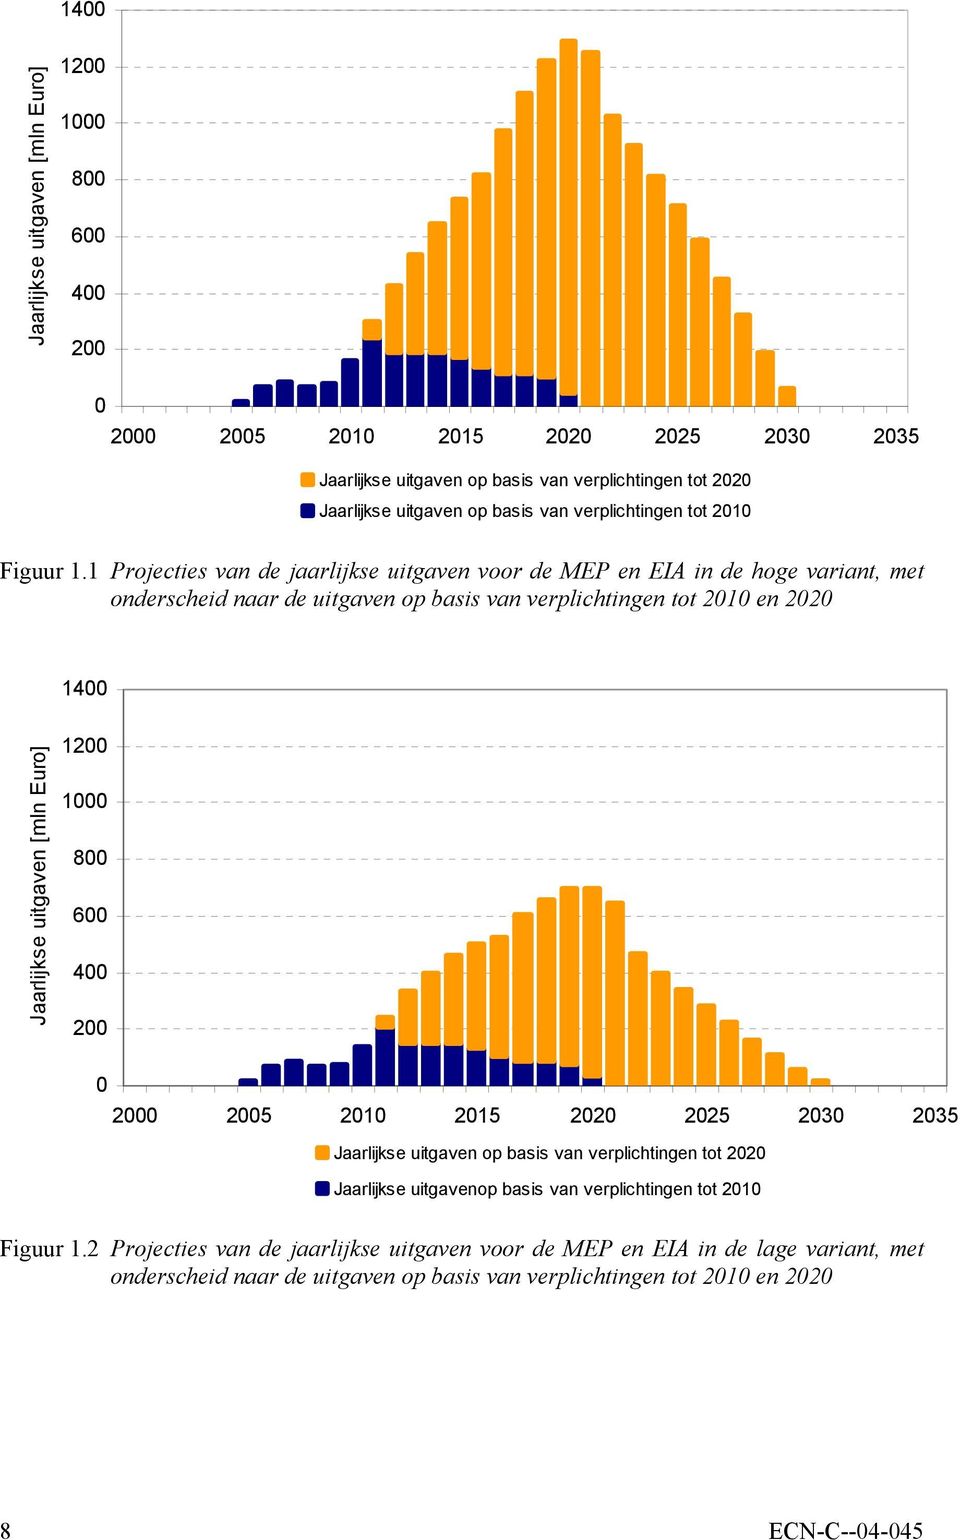 1 Projecties van de jaarlijkse uitgaven voor de MEP en EIA in de hoge variant, met onderscheid naar de uitgaven op basis van verplichtingen tot 2010 en 2020 Jaarlijkse uitgaven [mln Euro] 1400